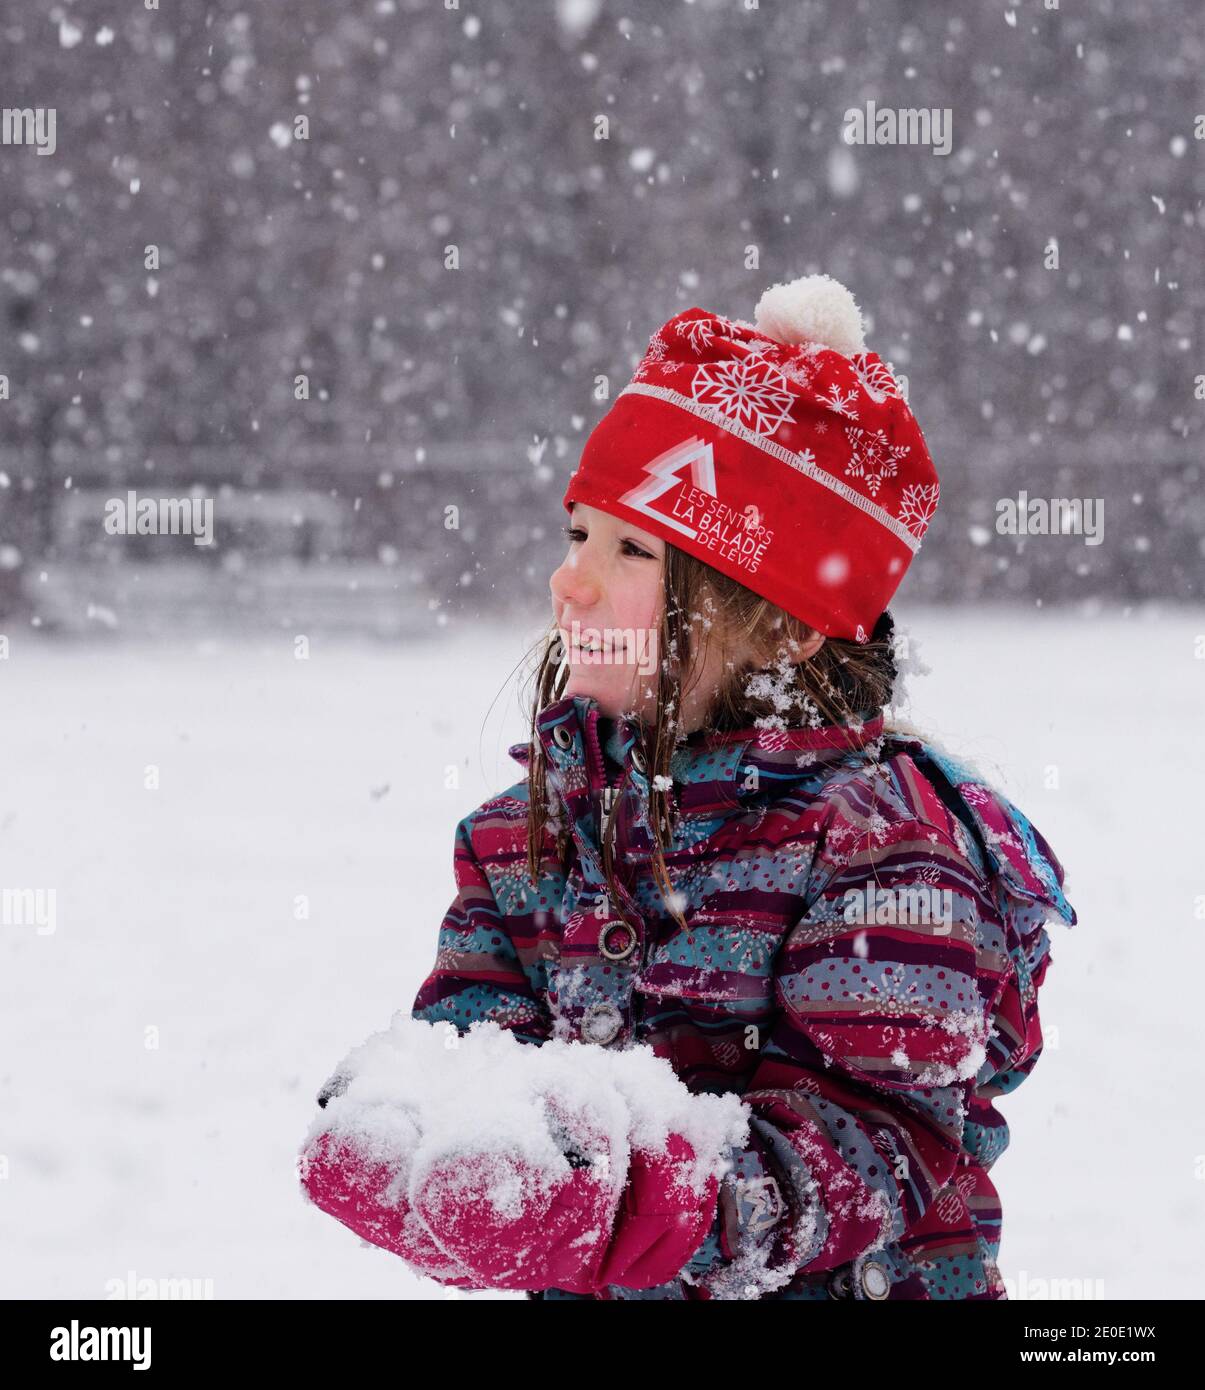 Portrait d'une petite fille (6 ans) à l'extérieur dans la neige qui tombe au Québec, Canada Banque D'Images